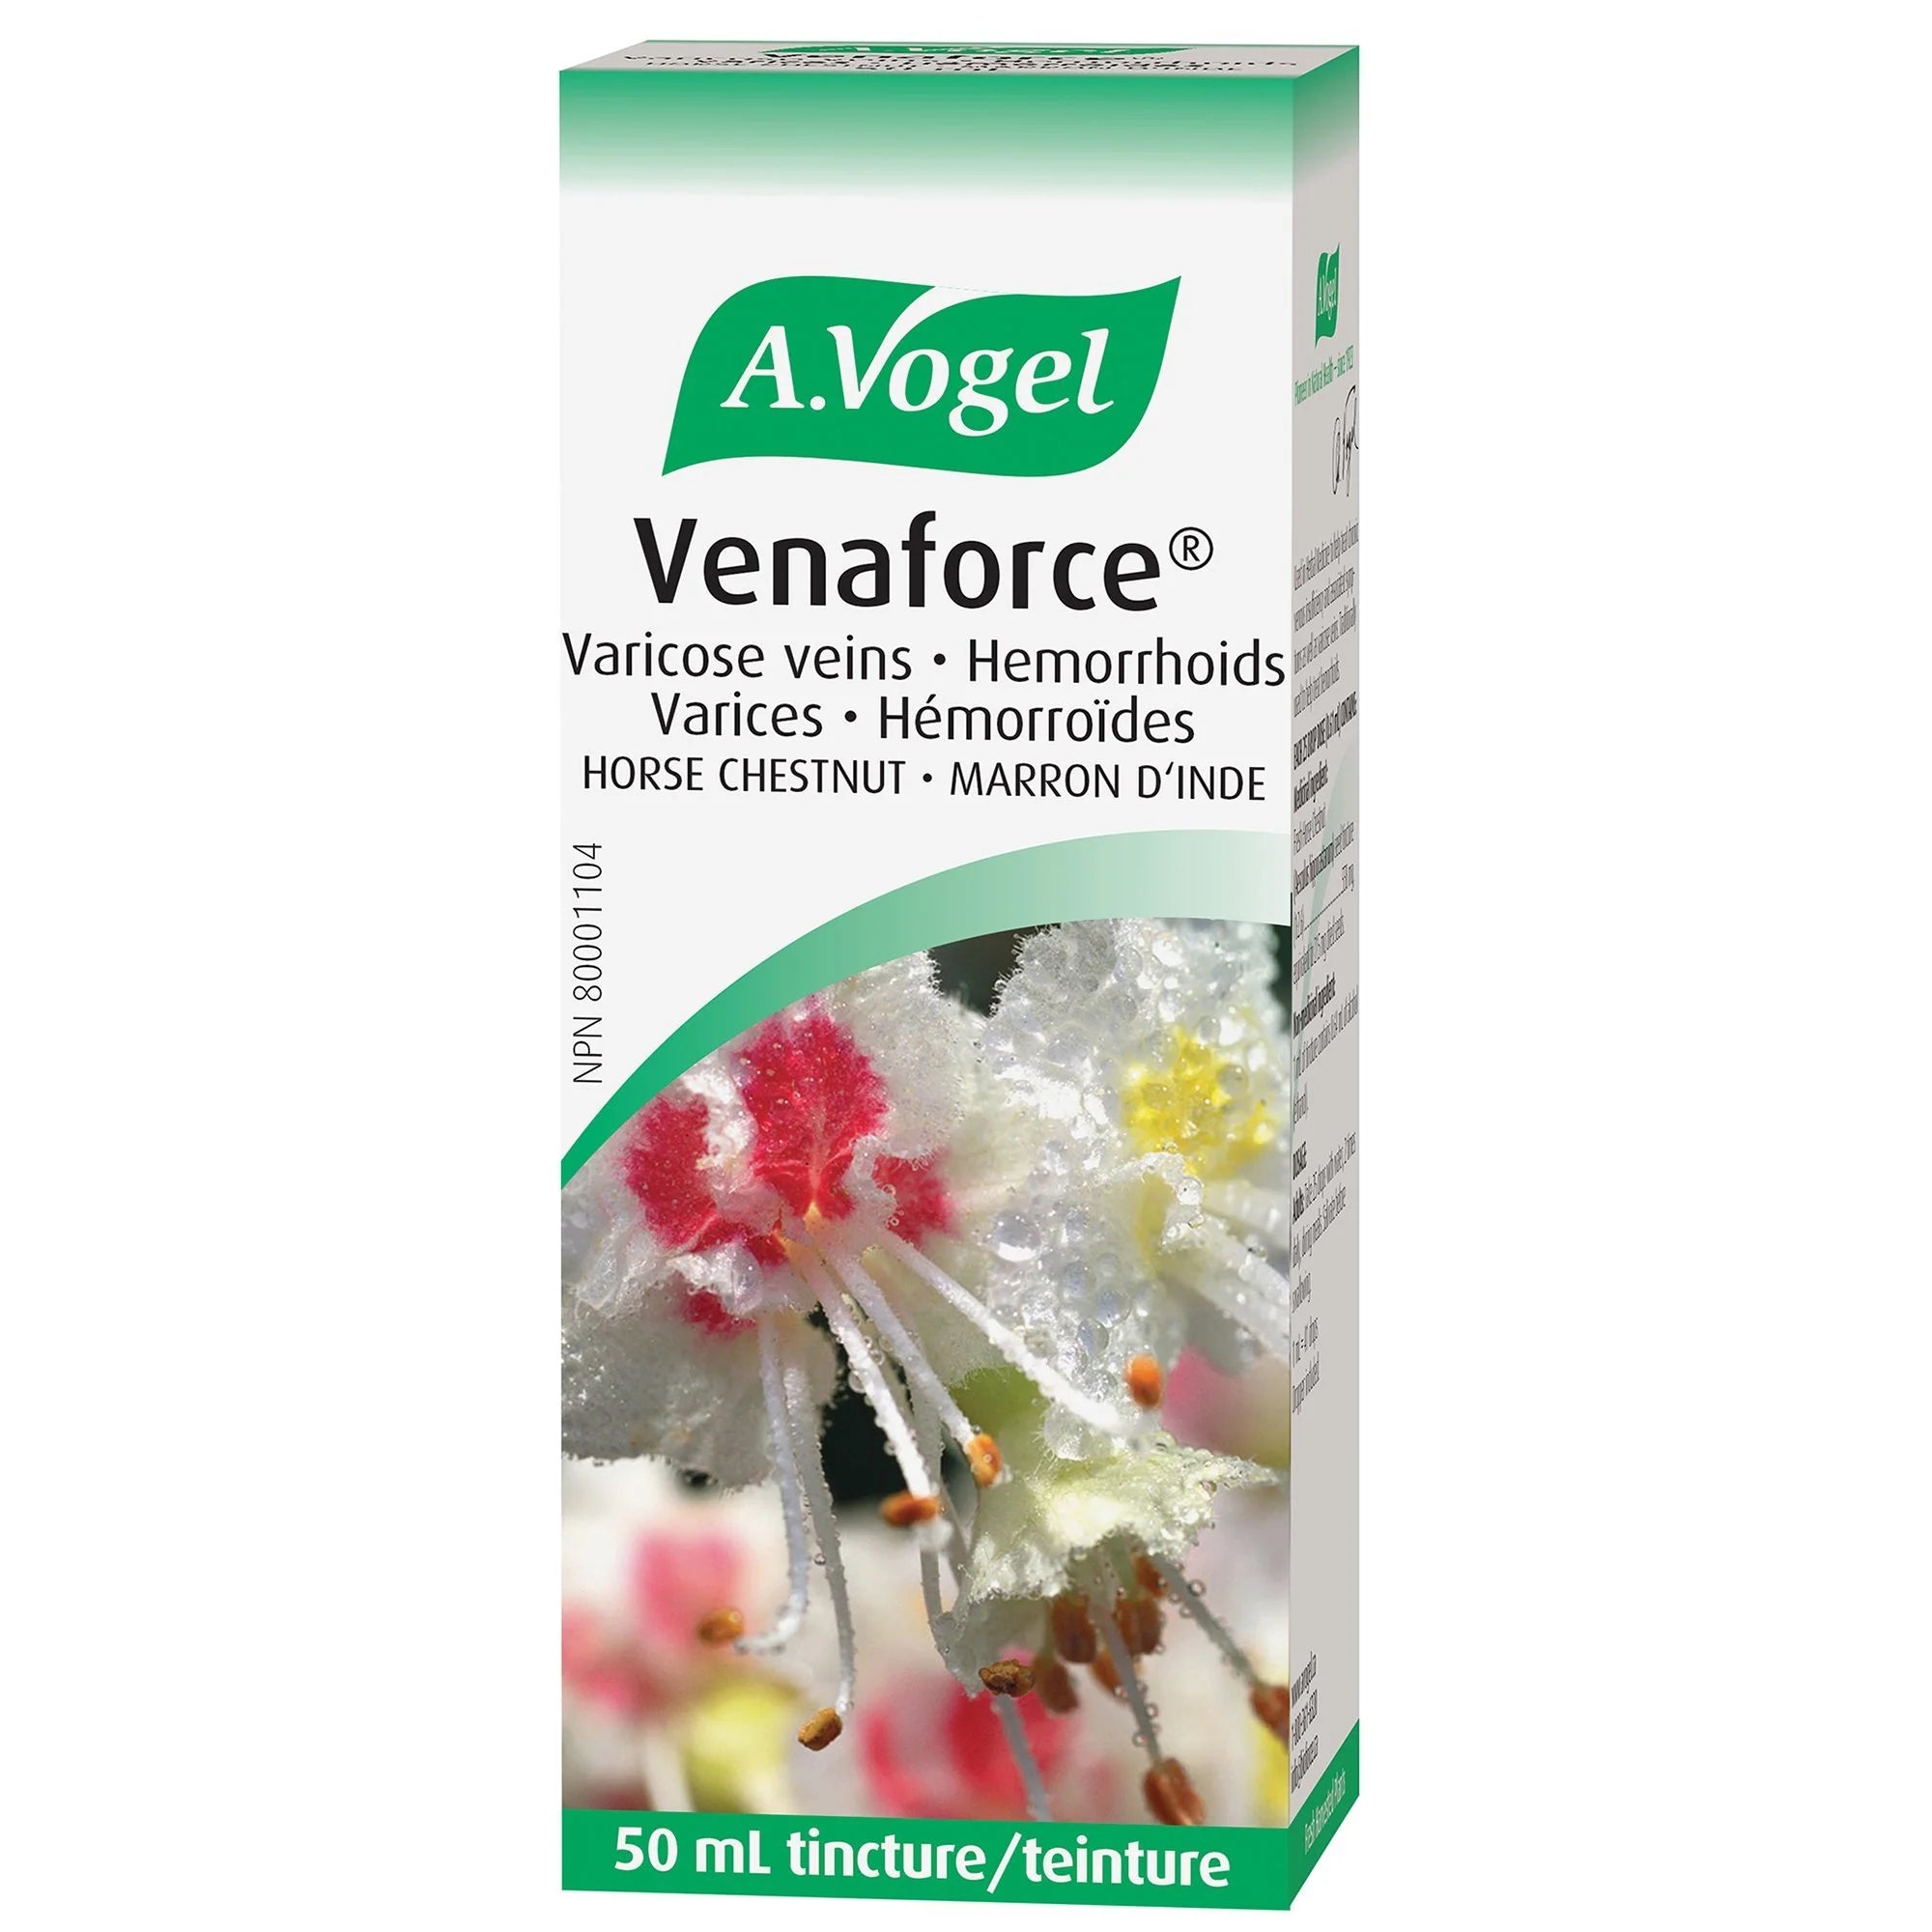 A.Vogel Venaforce liquide - pour le traitement des varices et hémorroïdes 50mL